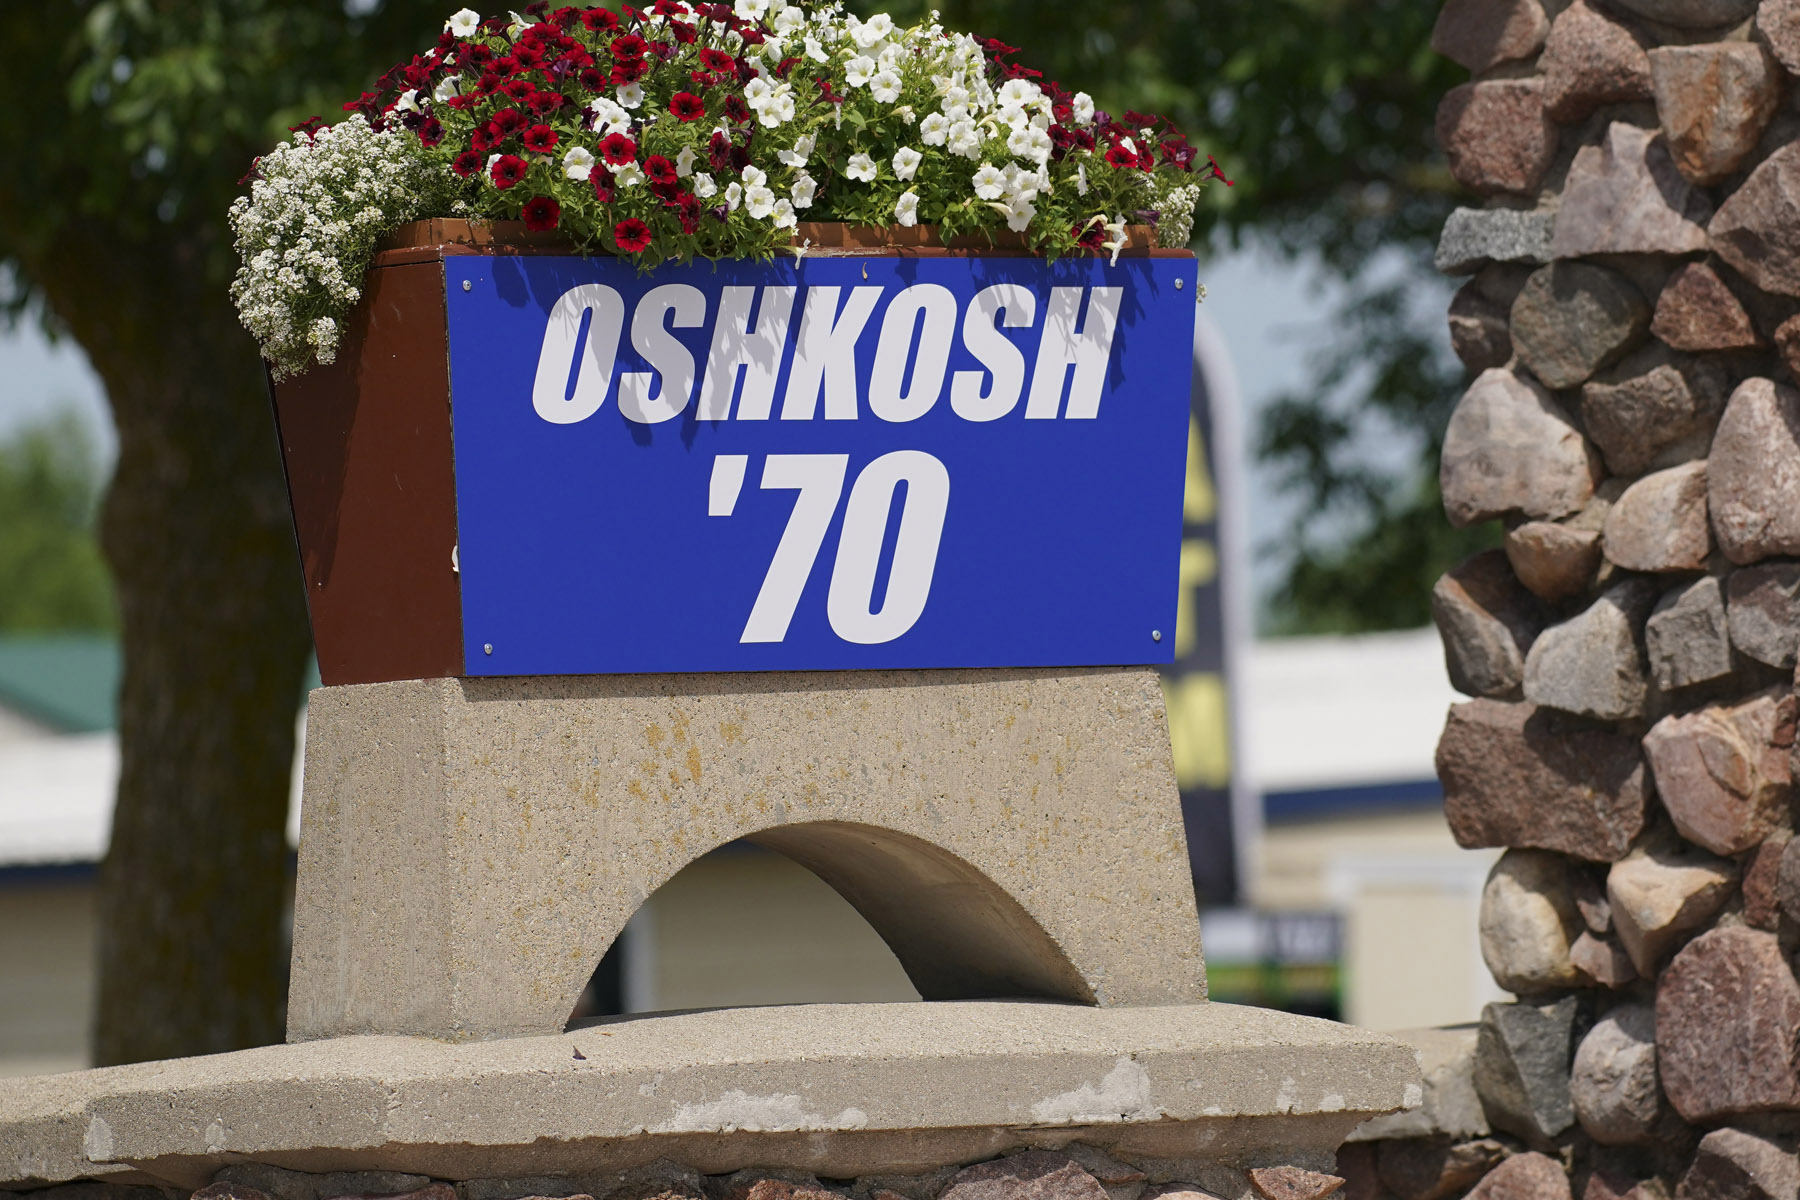 Oshkosh Year One: 1970